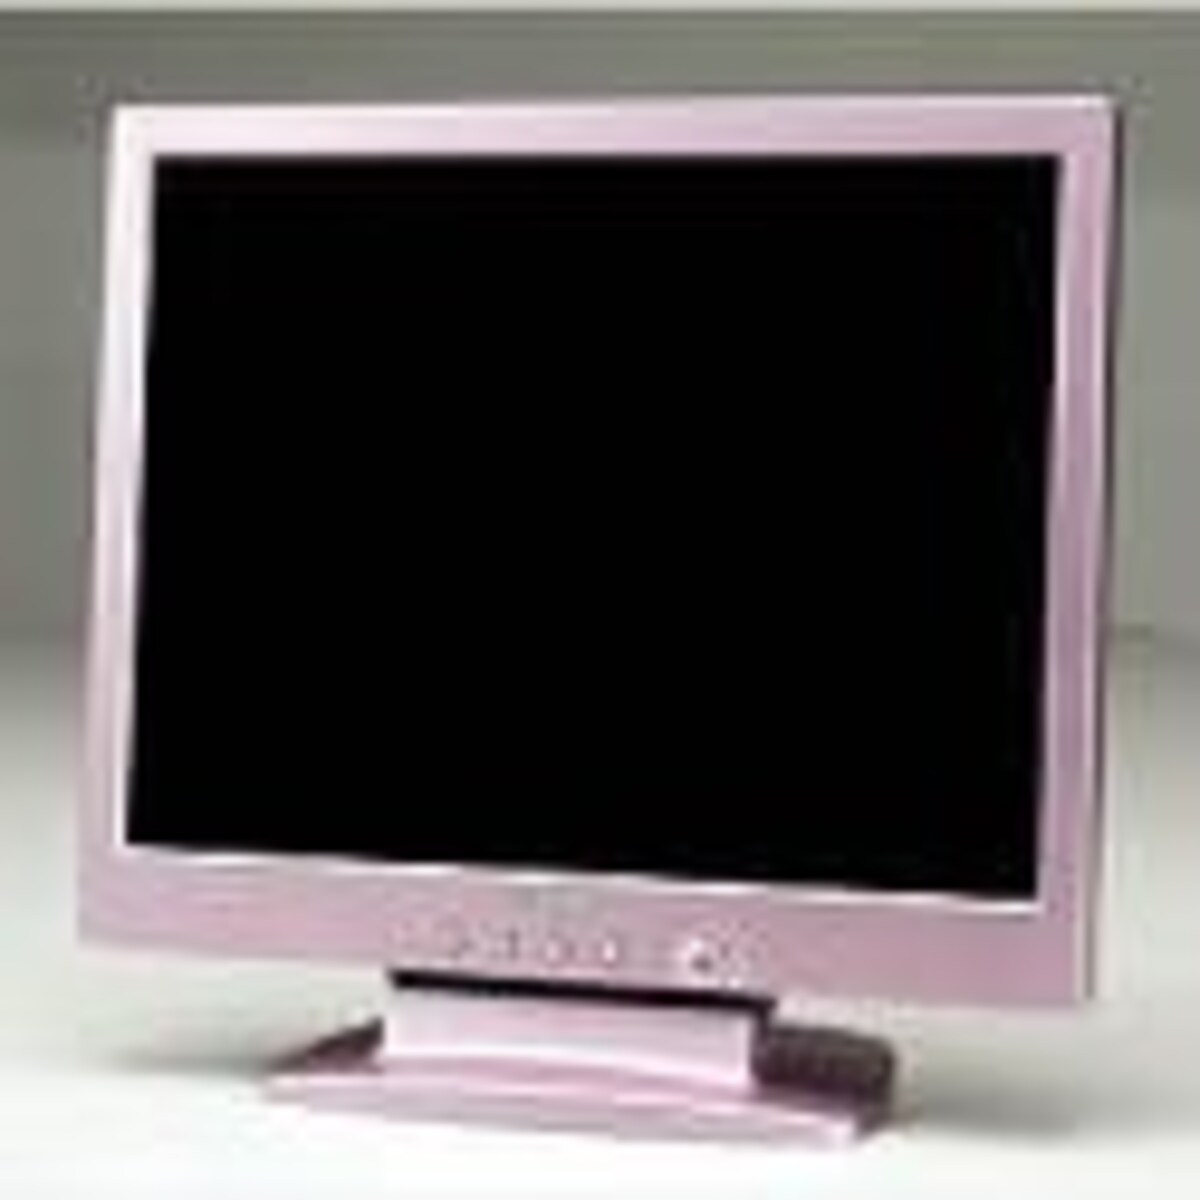 I-O DATA LCD-A15CE(PS) 15インチTFTカラーLCD:ピンクシルバー